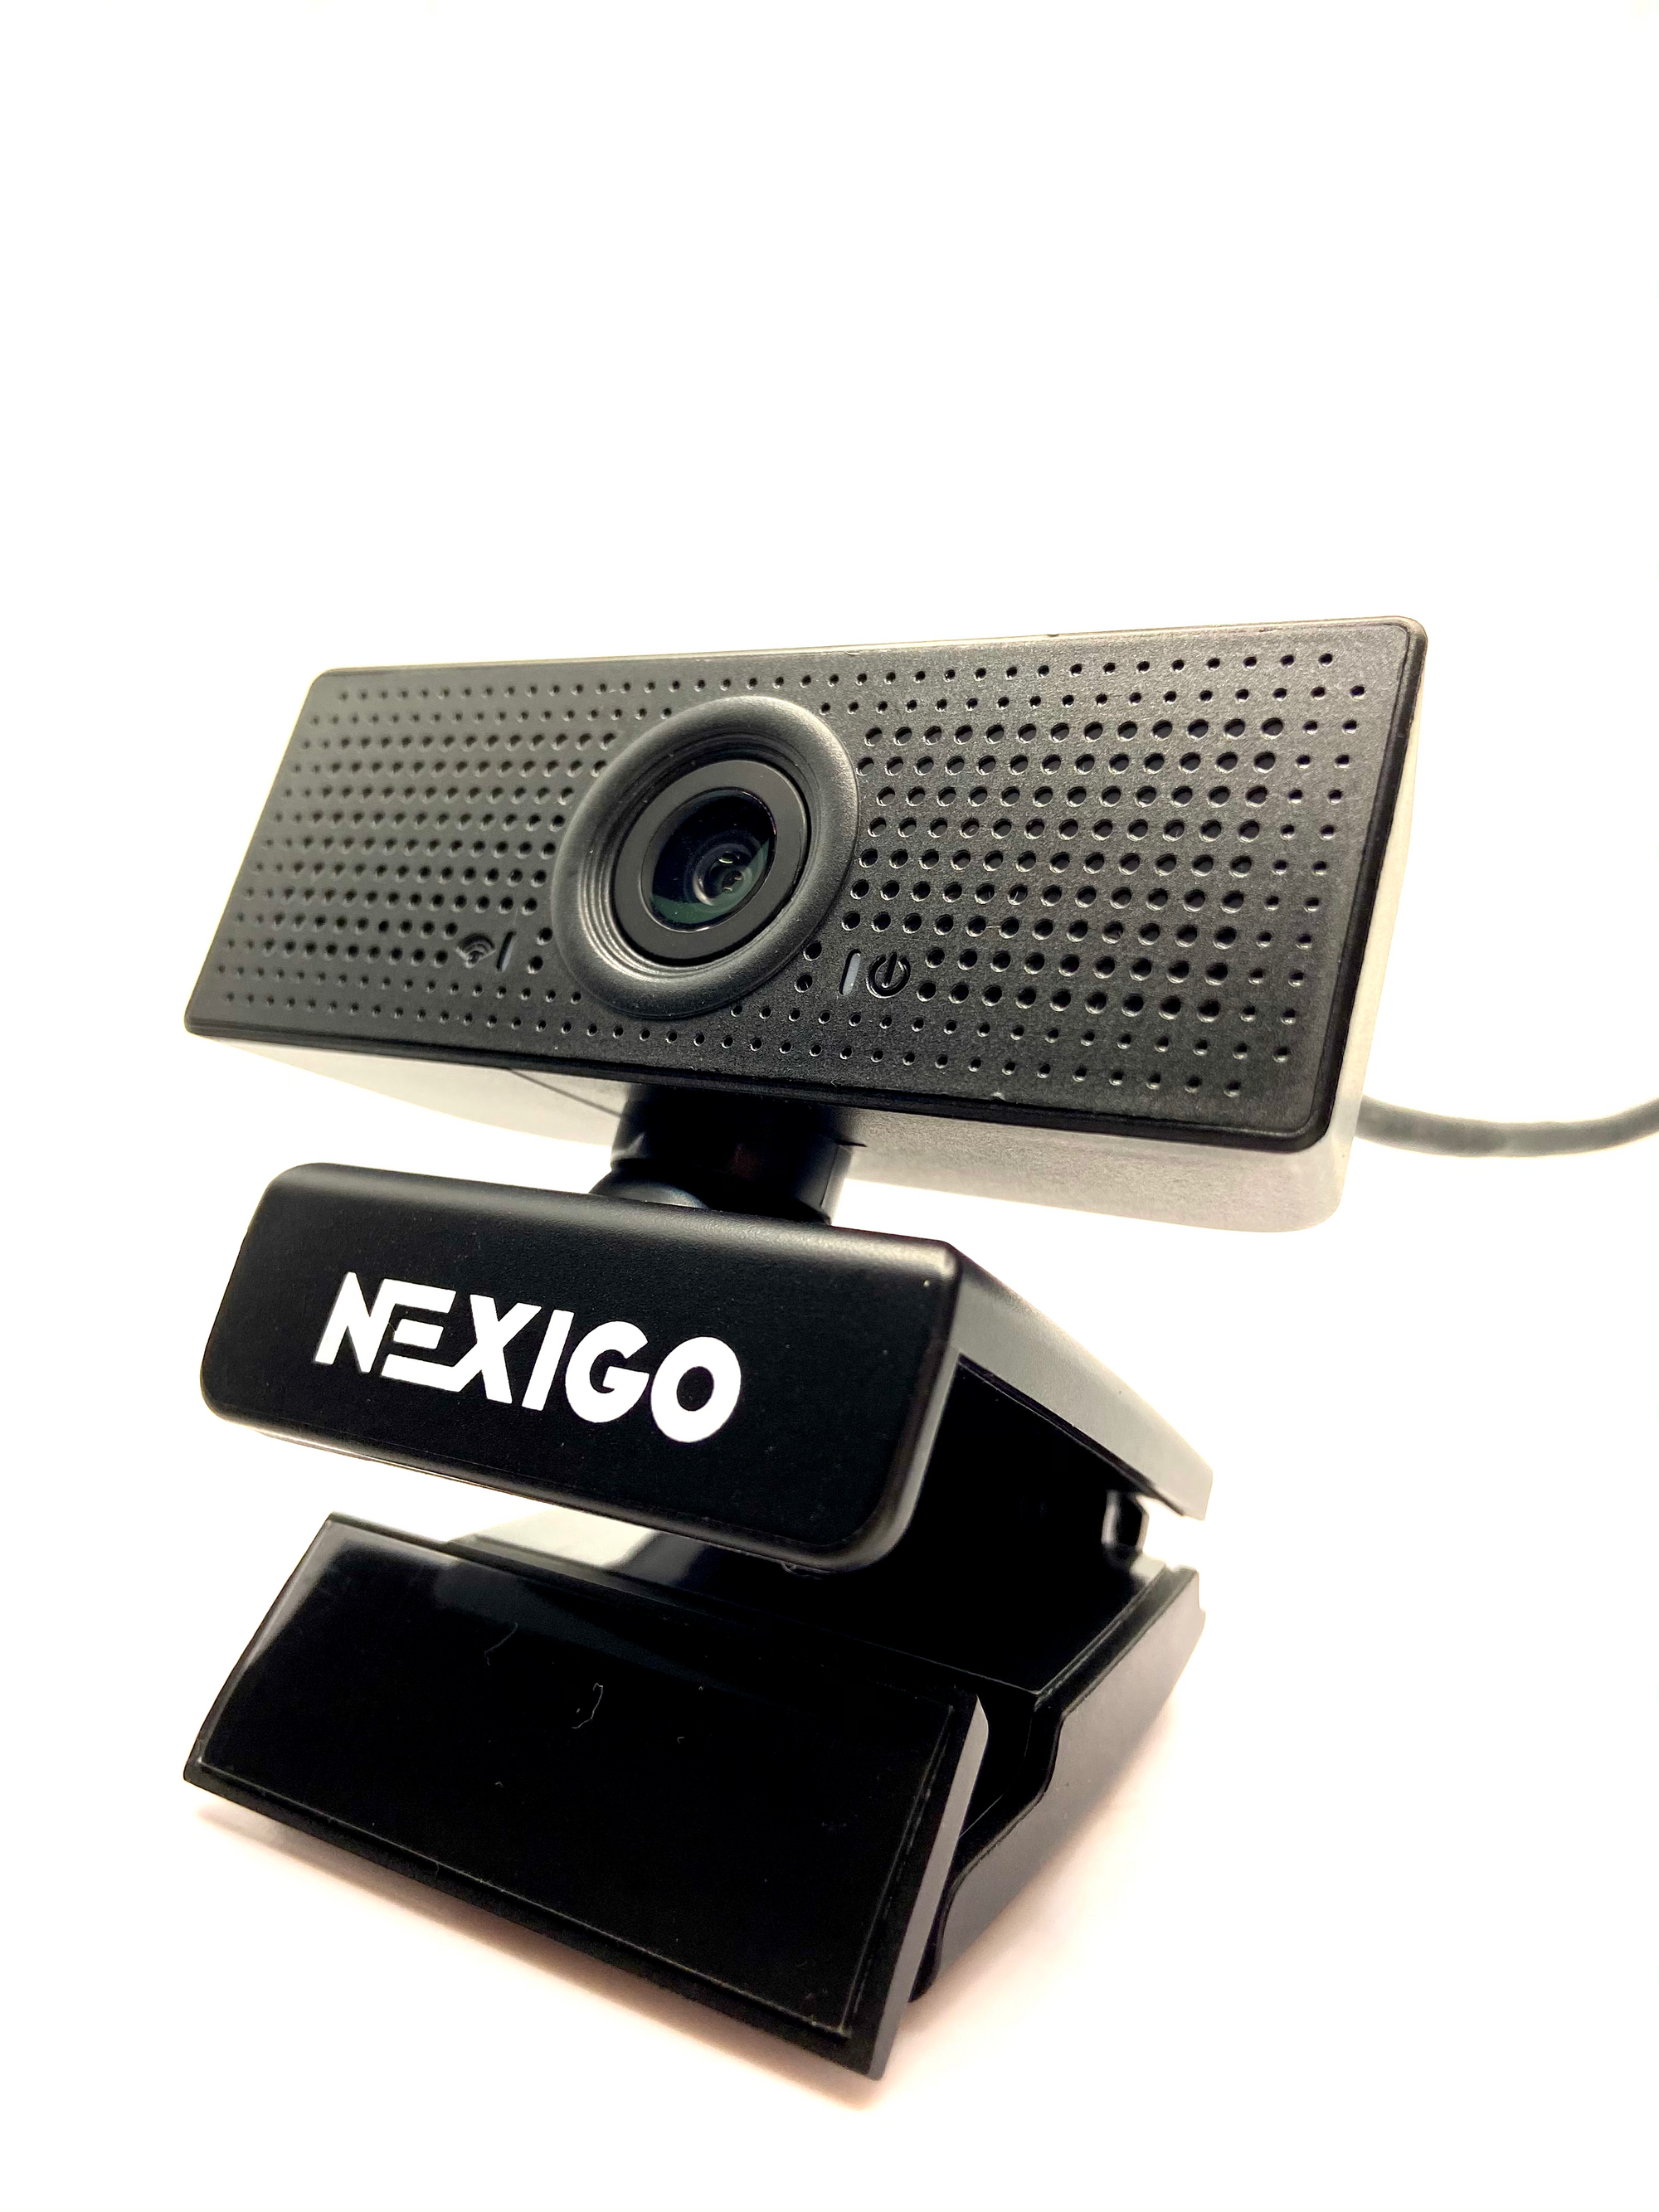 Nexigo N60 1080p Full HD Webcam Review - Budget Wide Angle Lens Camera